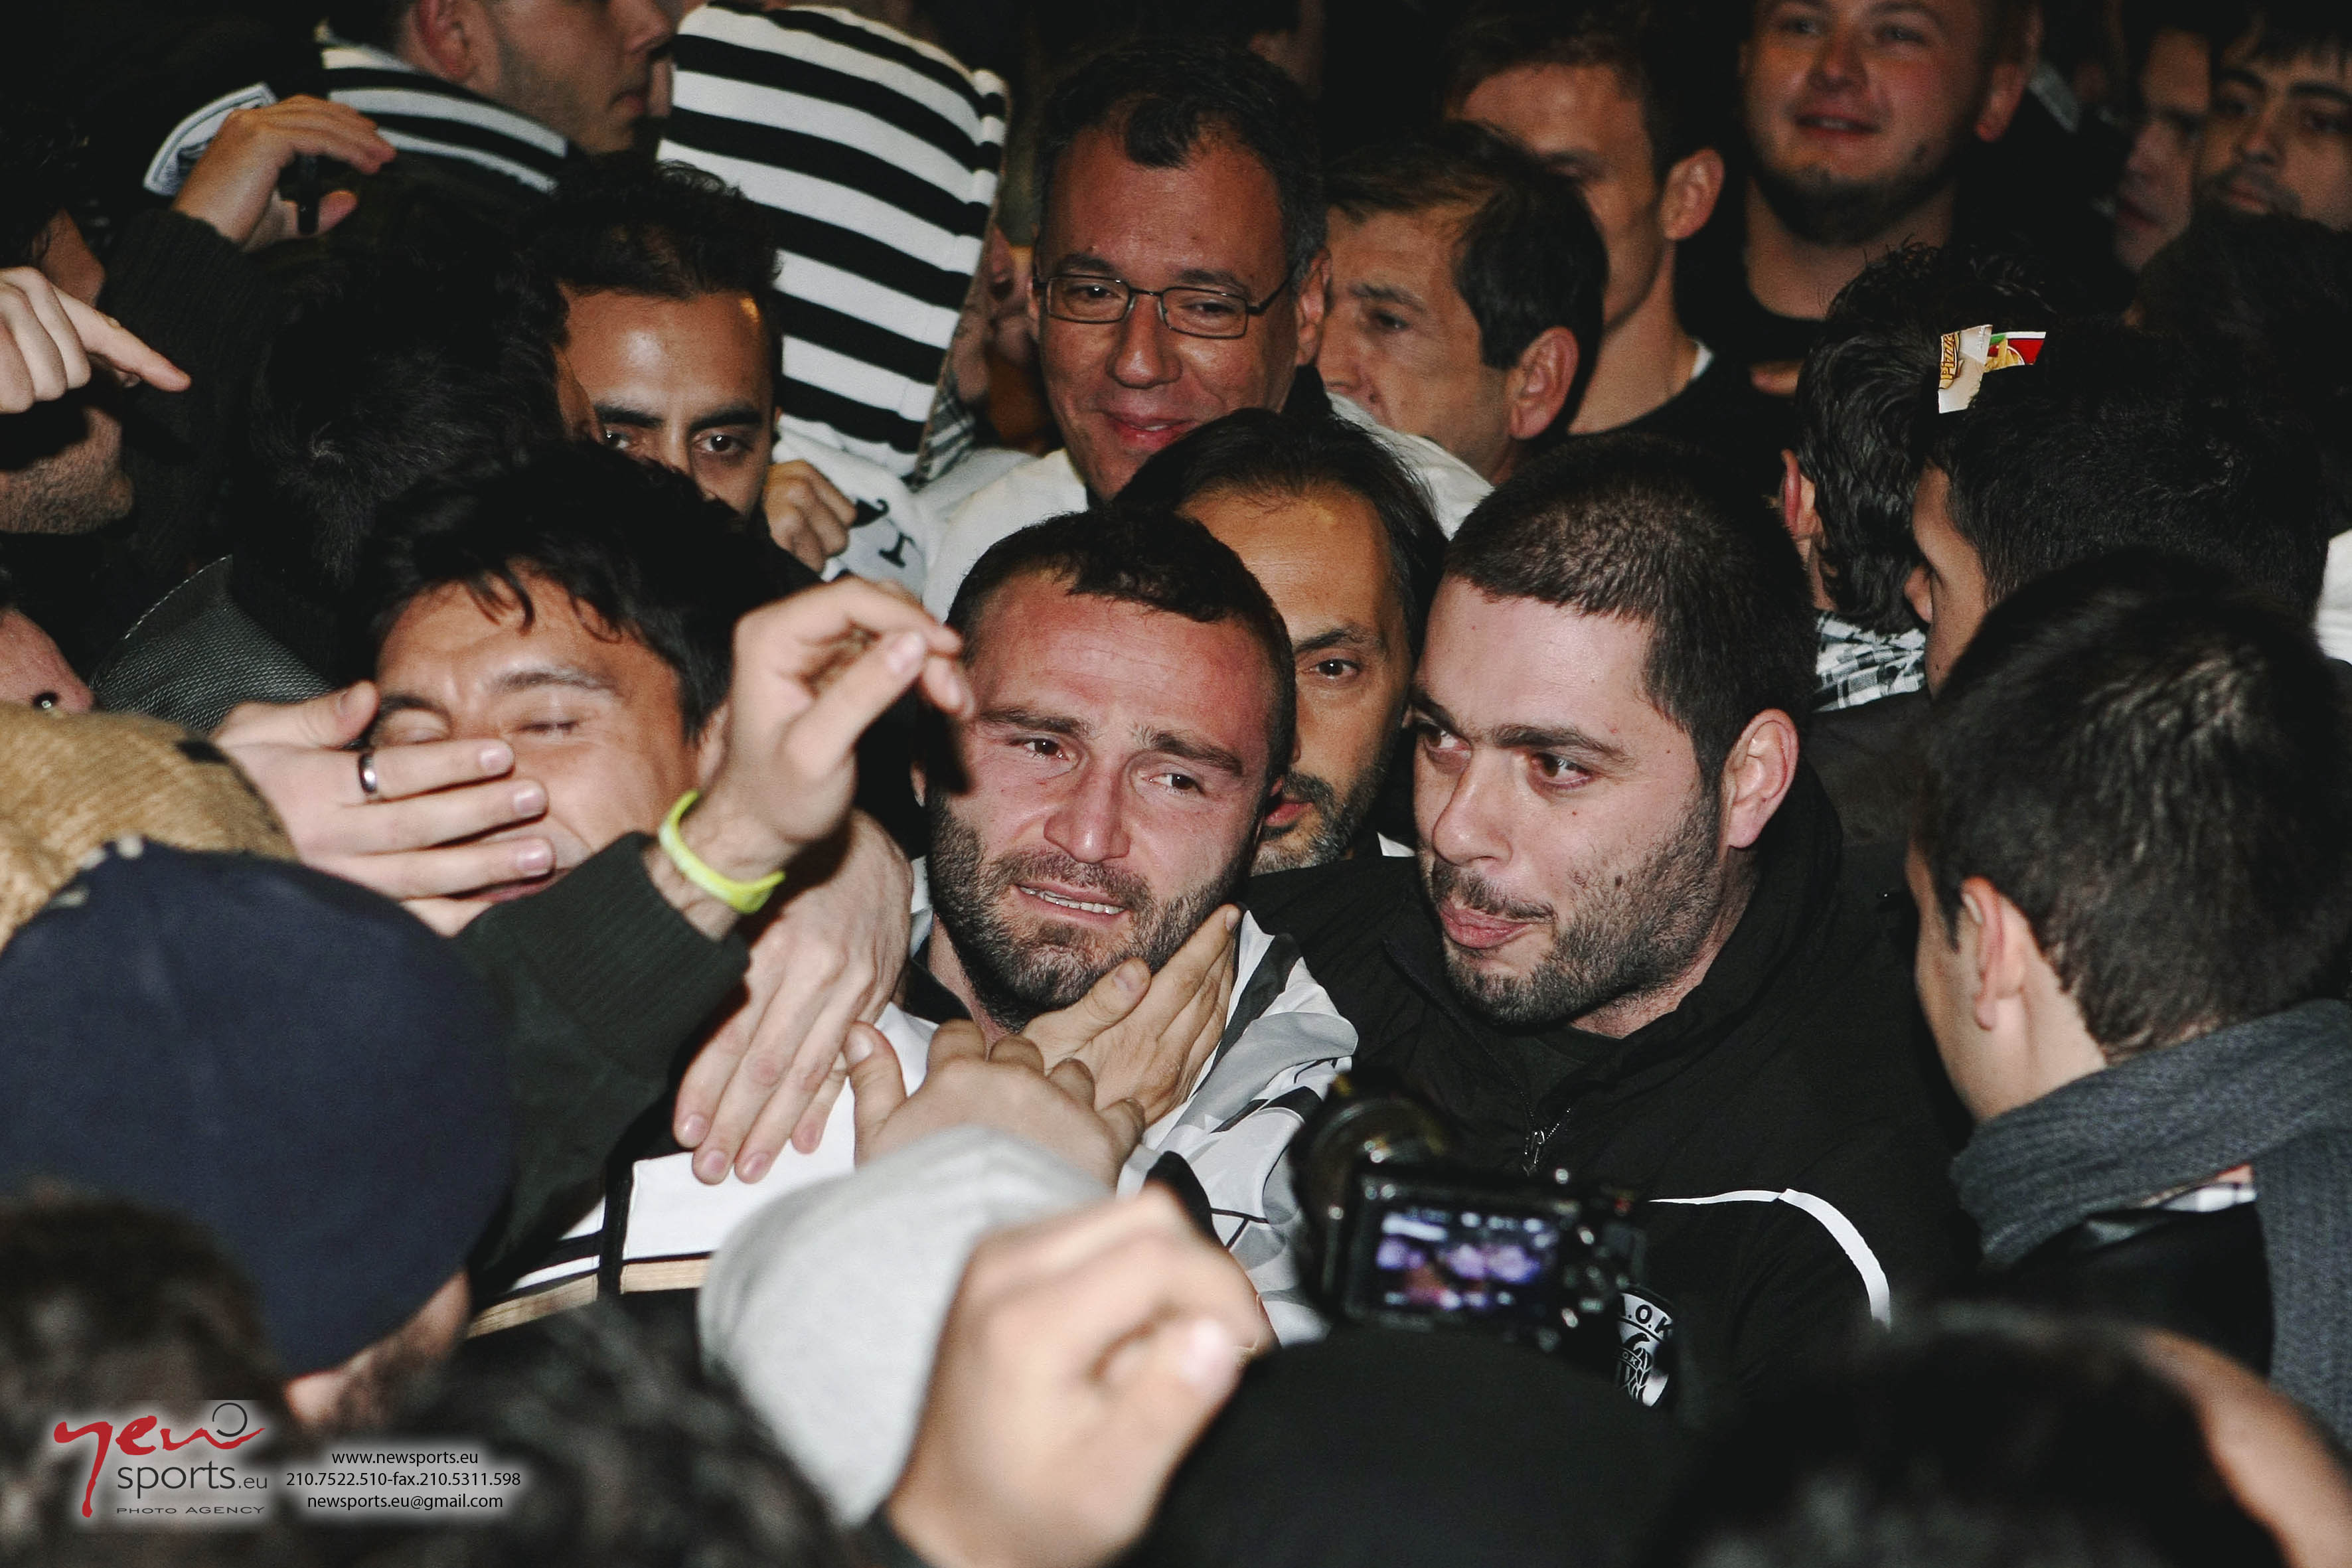 Περίπου 2.000 οπαδοί του ΠΑΟΚ βρέθηκαν νωρίς το πρωί στο αεροδρόμιο “Μακεδονία” για να υποδεχθούν τους παίκτες. Εδώ αγκαλιάζουν τον Σαλπιγγίδη...  ΦΩΤΟ Newsports